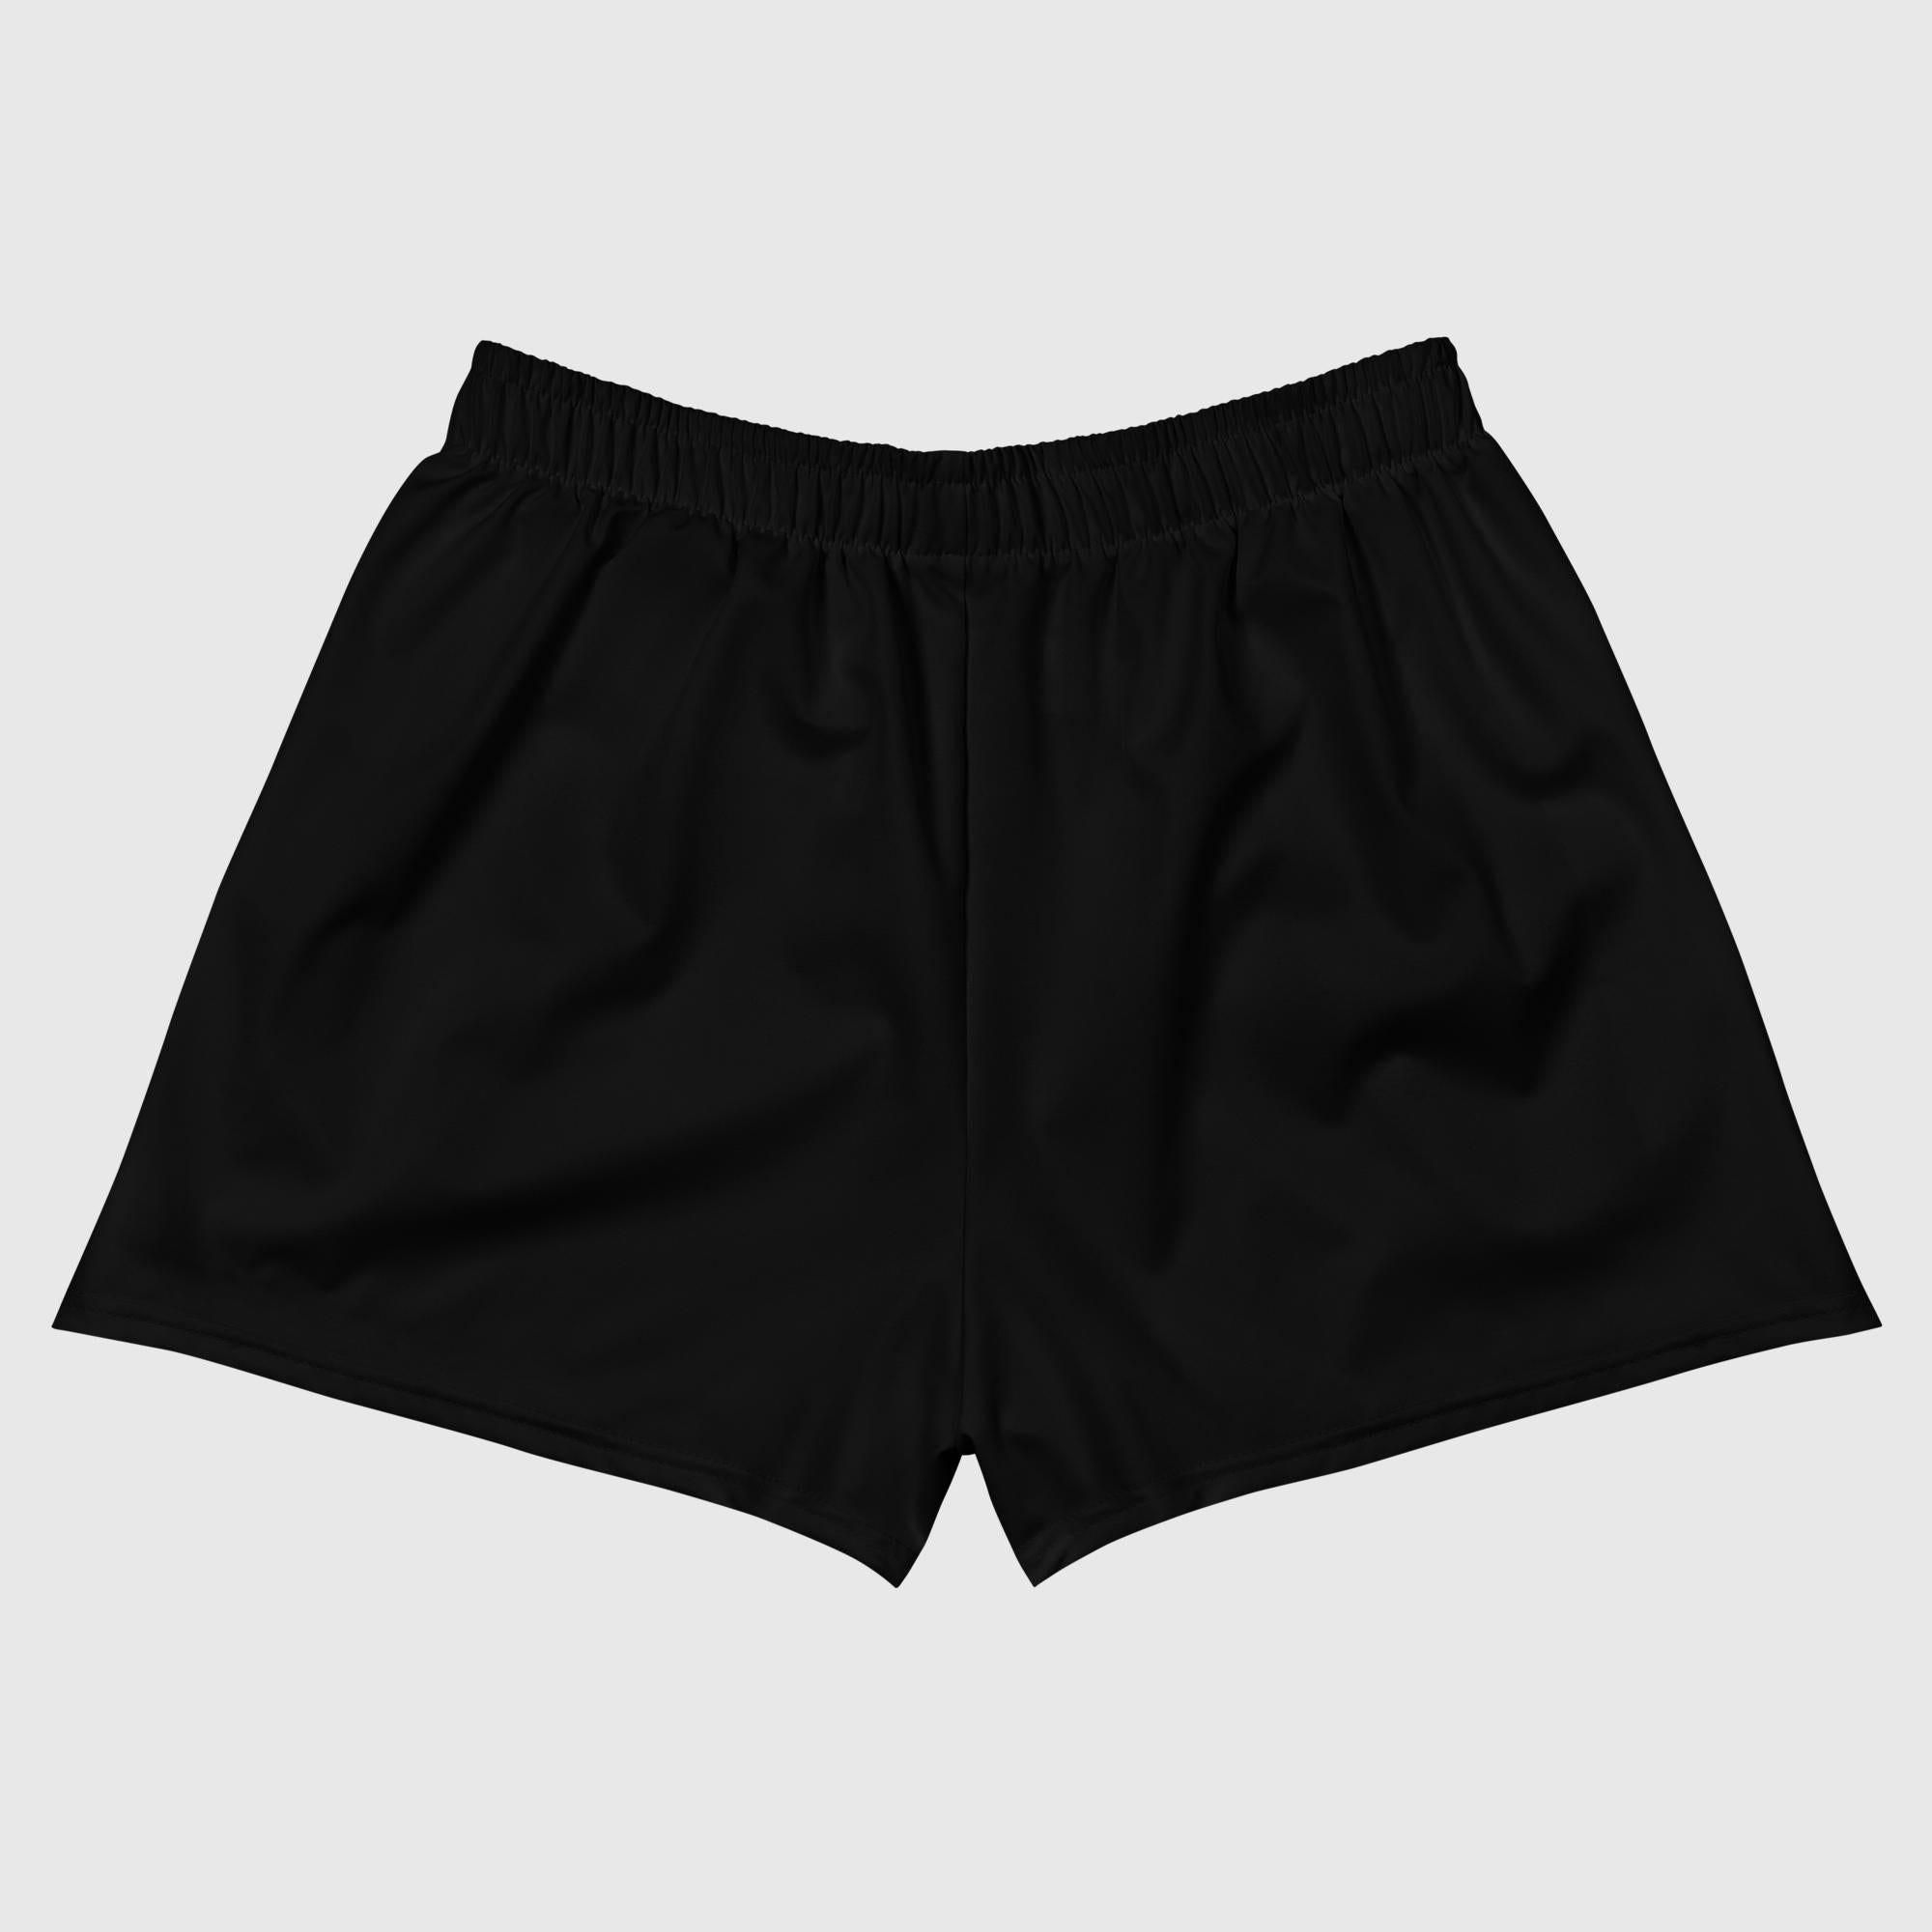 Shorts deportivos unisex con estampado integral - Negro